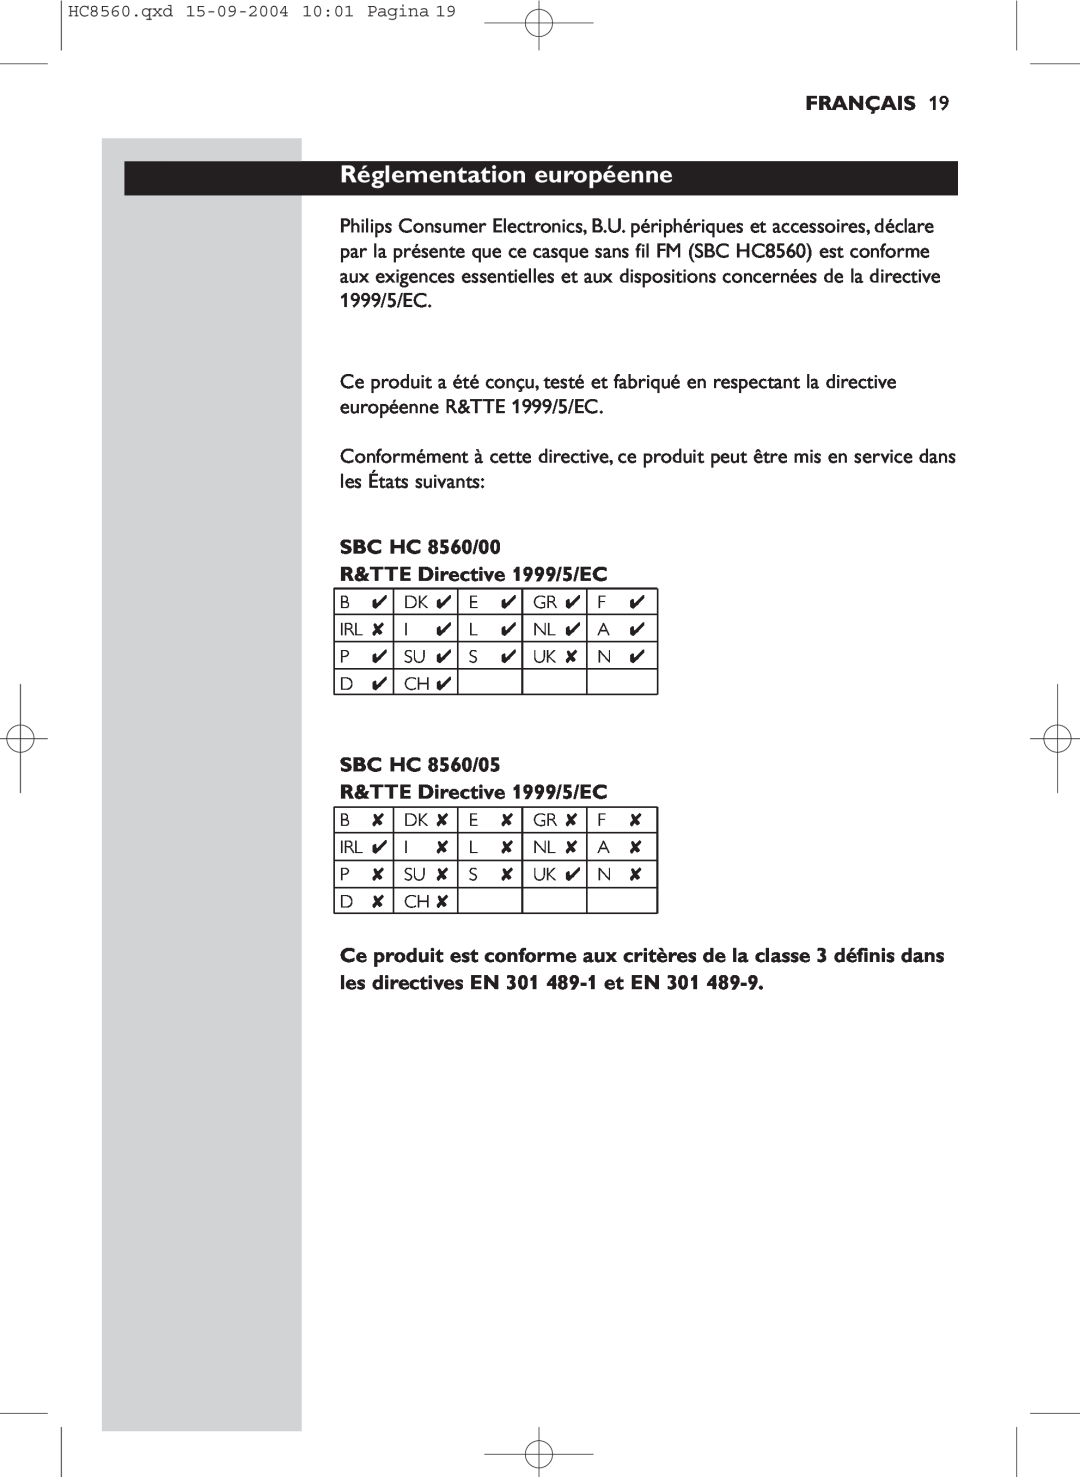 Philips manual Réglementation européenne, Français, SBC HC 8560/00 R&TTE Directive 1999/5/EC 